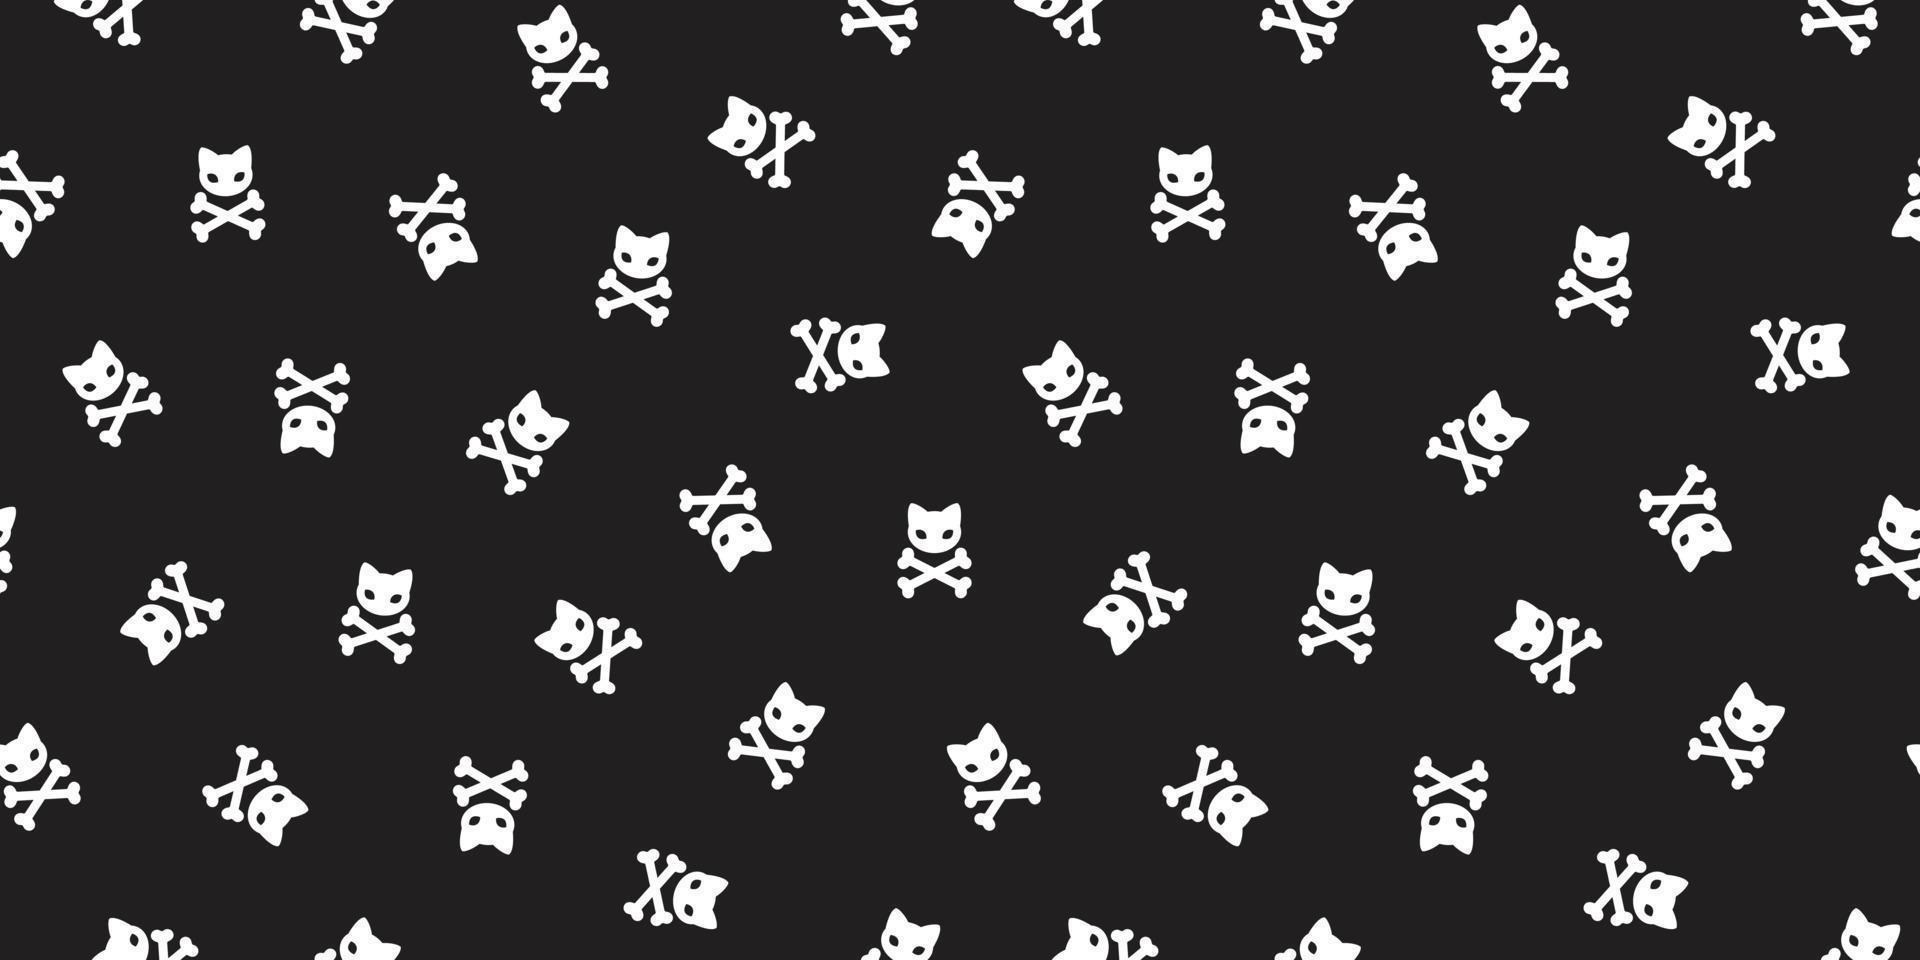 pirata ossos cruzados desatado padronizar gato vetor gatinho dia das Bruxas pirata isolado Preto papel de parede fundo